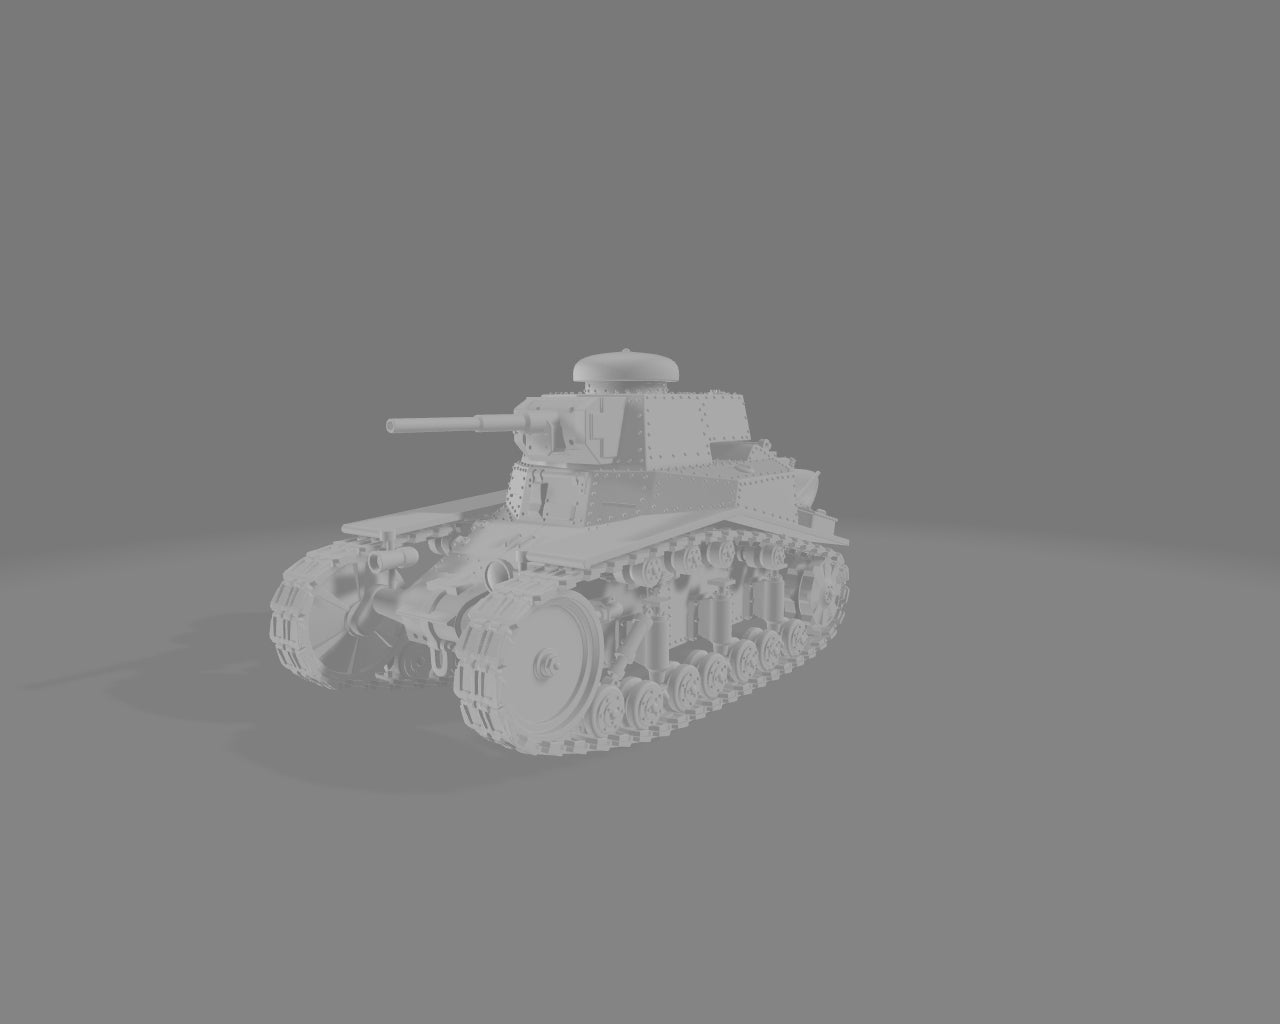 Soviet T-18